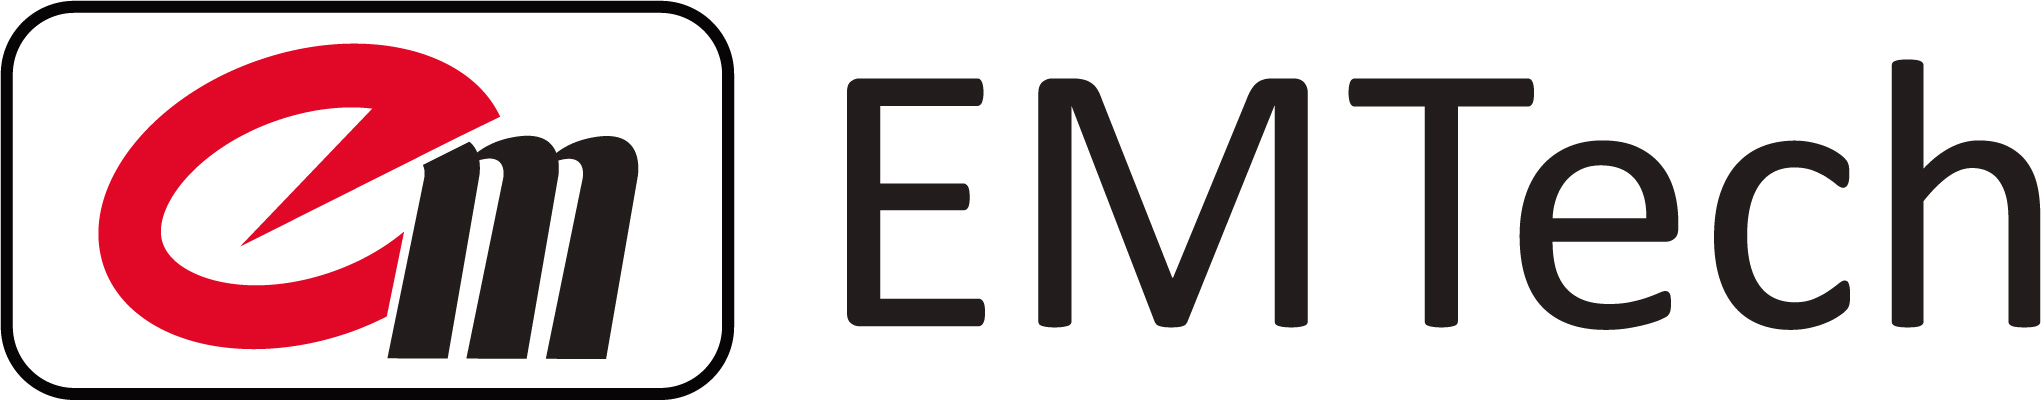 이엠텍의 로고 이미지